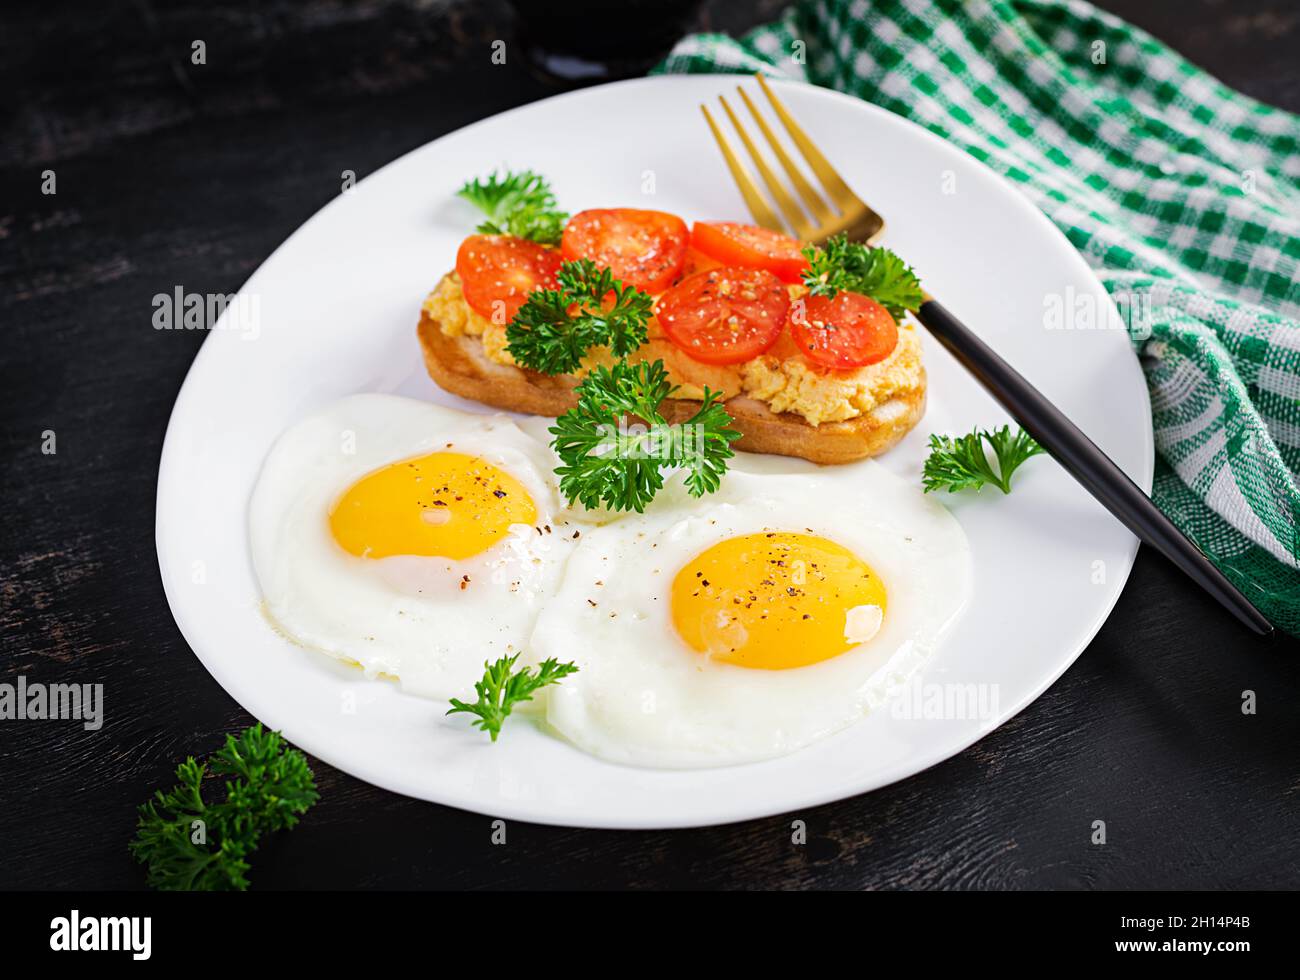 Des œufs frits et un sandwich au pâté de poulet grillé sur fond sombre. Banque D'Images